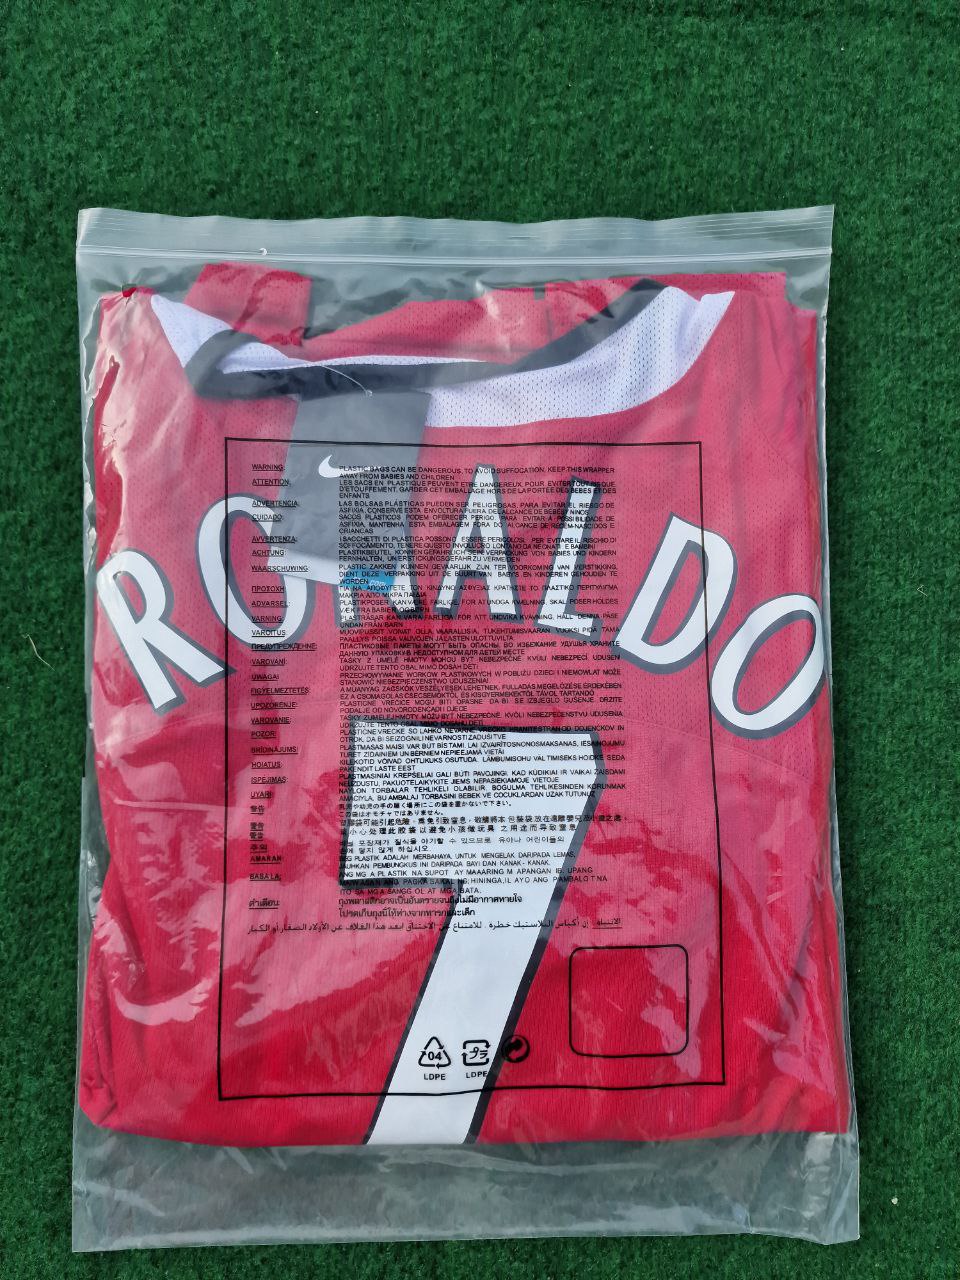 Cristiano Ronaldo Manchester United 2005 Retro Football Jersey